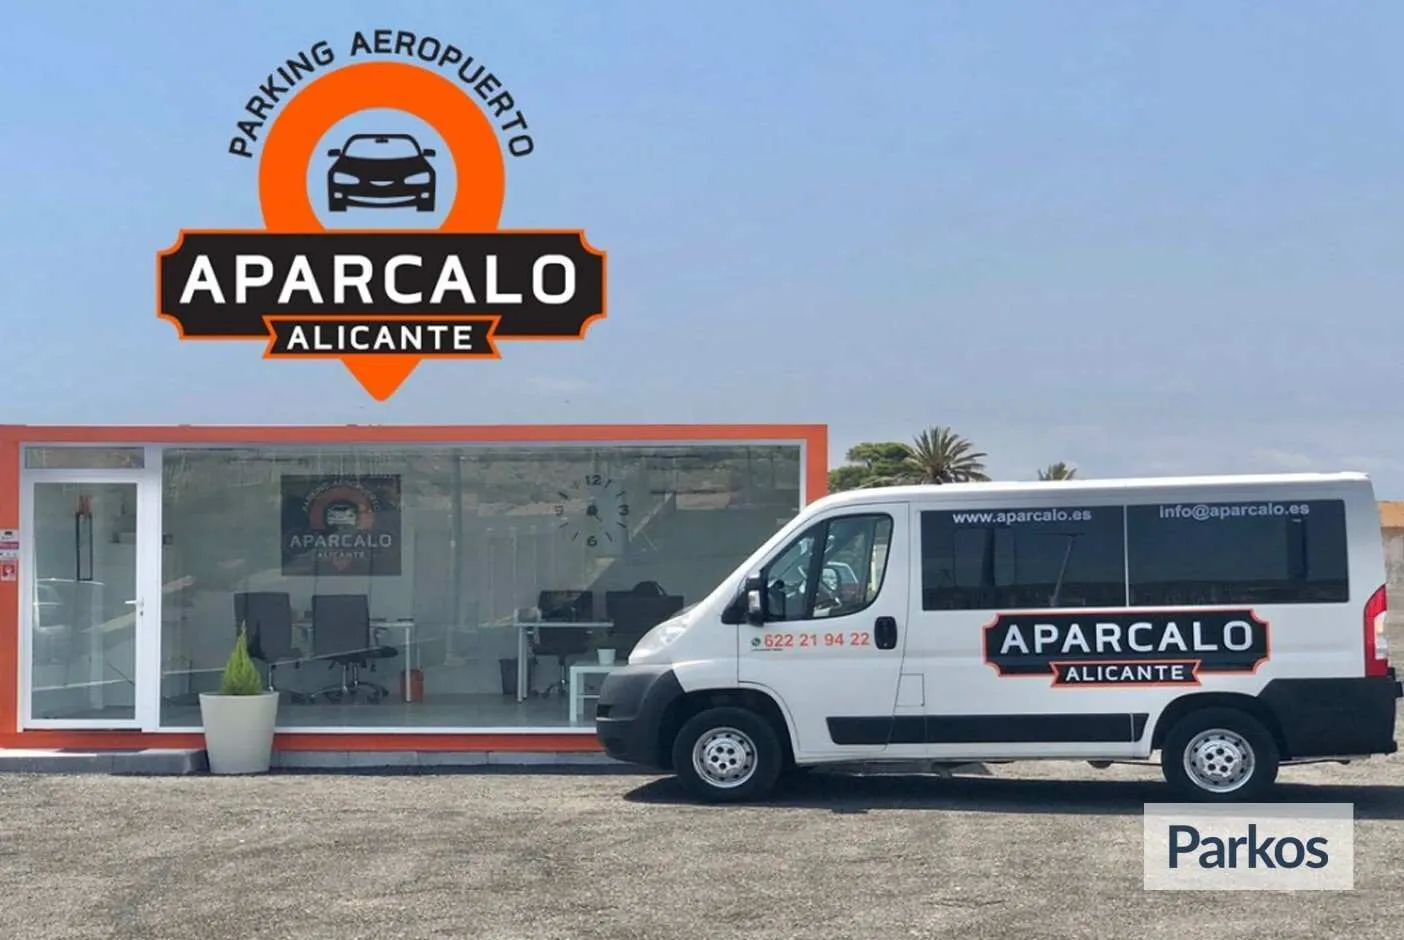 Aparcalo Alicante (pago online) - Alicante Airport Parking - picture 1